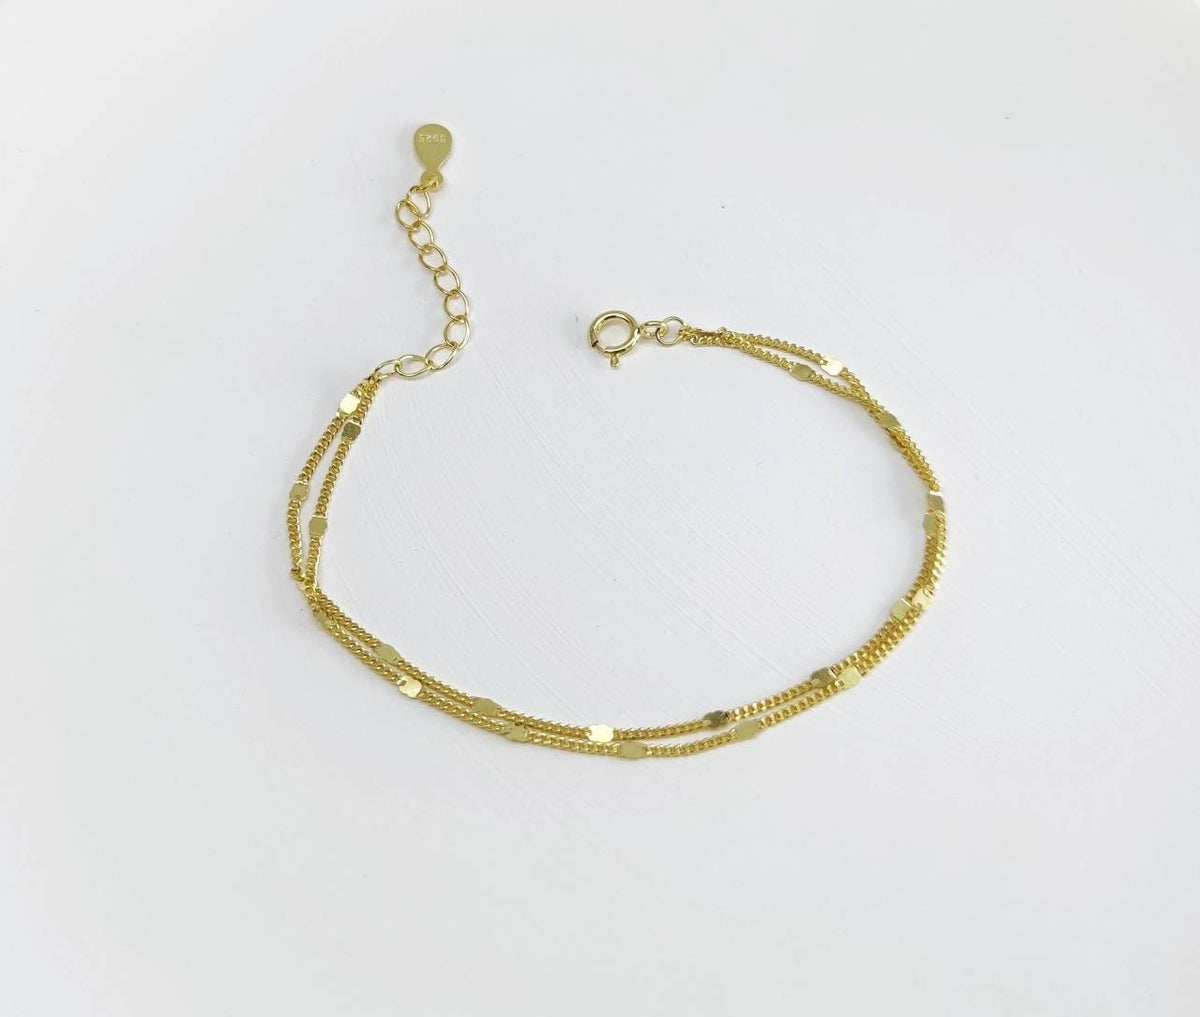 Zartes Armband-Doppelschicht-Stapelarmband-zierliches Armkettchen-fein-puristisch-minimal-925er Silber-Gold-vergoldet